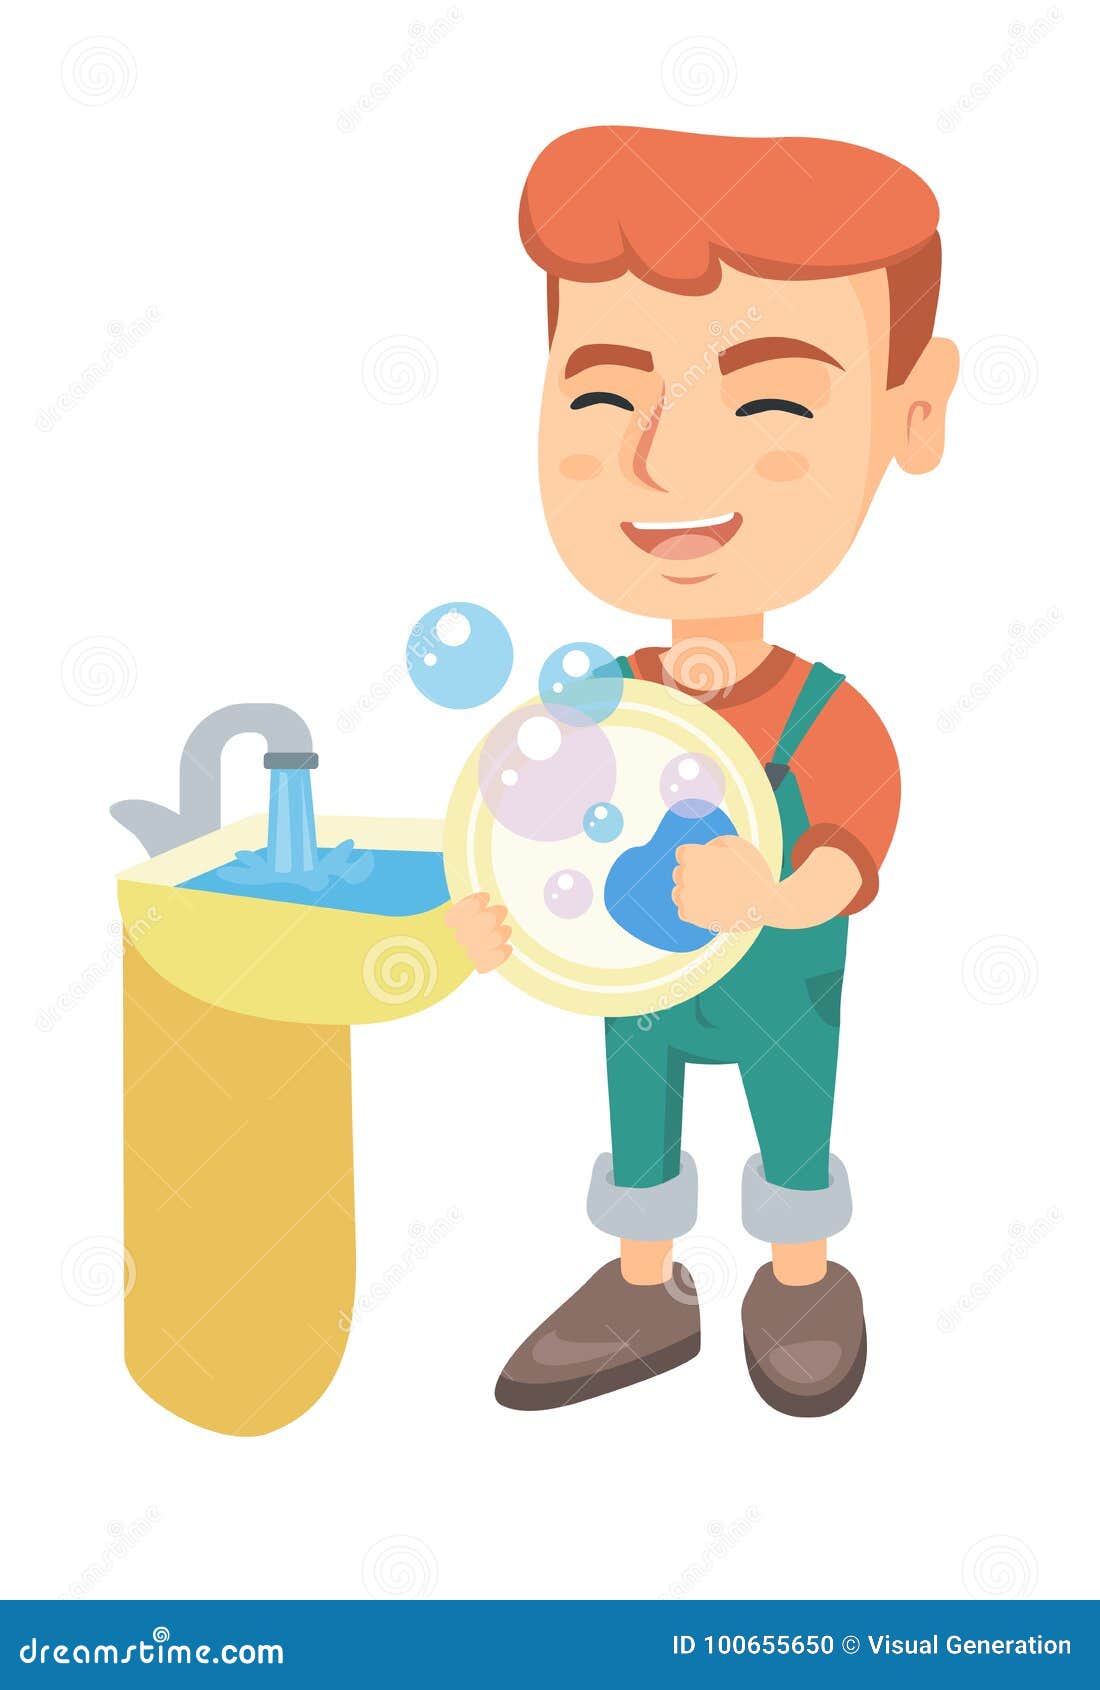 Мальчик моет посуду. Мальчик моет посуду мультяшный. Мальчик моет посуду иллюстрация. Мыть посуду мультяшная. Мальчик вытирает посуду.